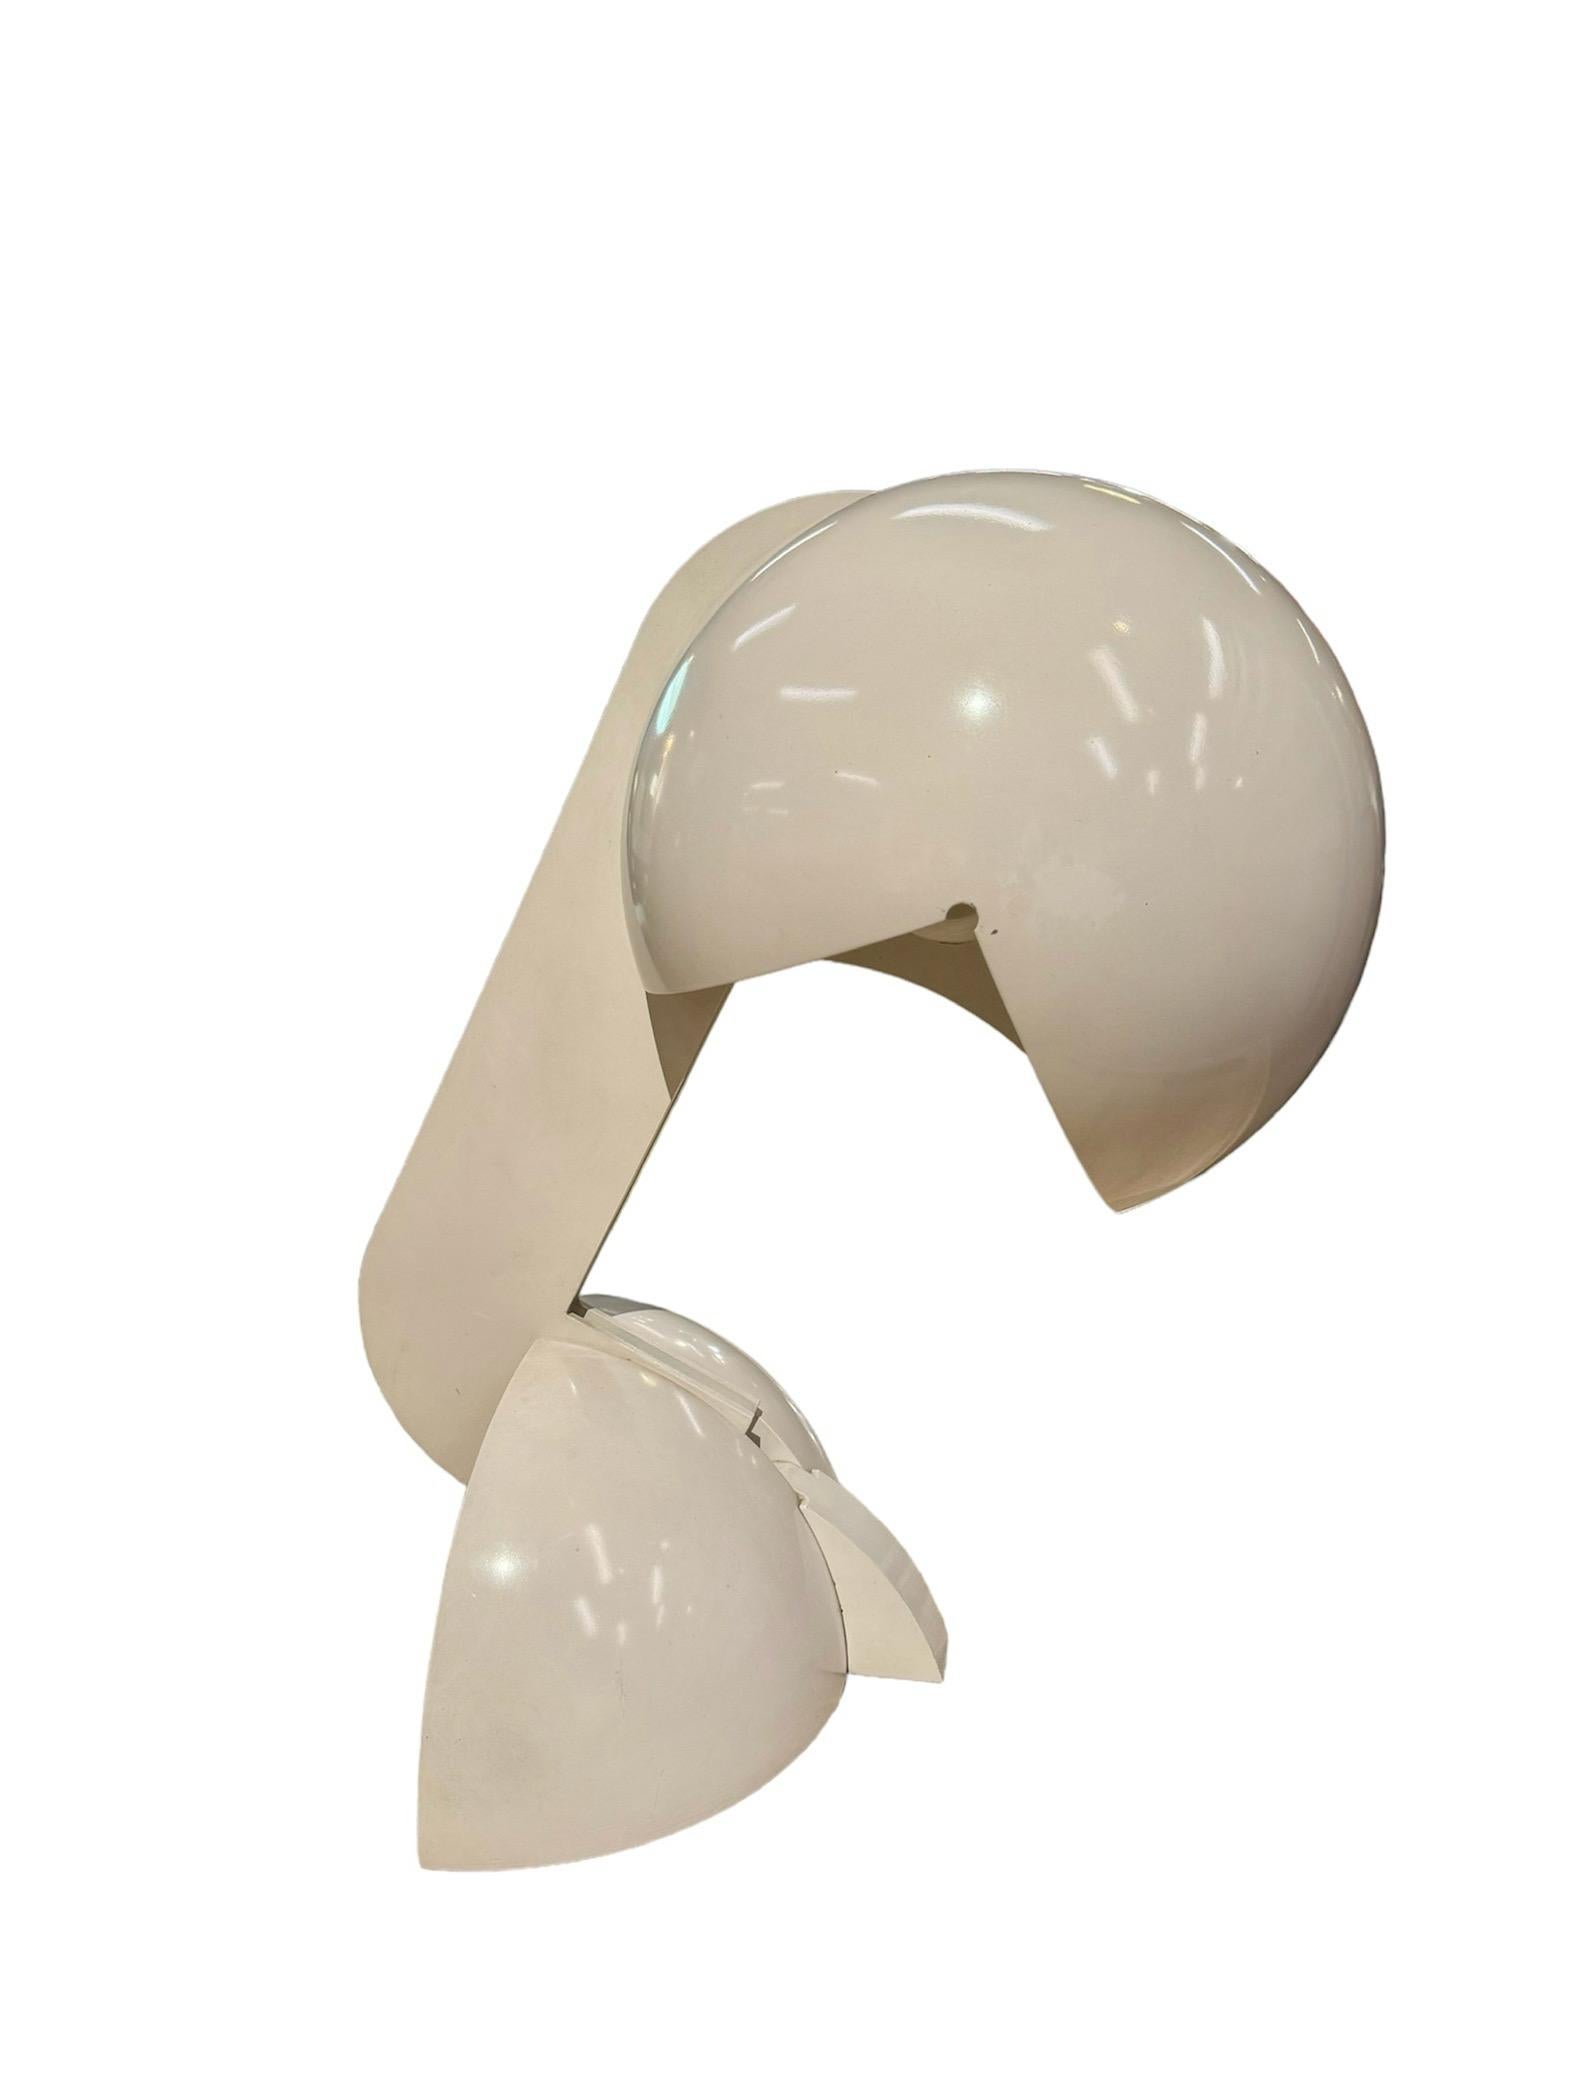 Die 1967 von Gae Aulenti entworfene Leuchte Ruspa gilt aufgrund ihrer skulpturalen Form und des fast industriellen Charakters ihrer Bestandteile, die an Maschinen erinnern, als Meisterwerk. Die Leuchte verfügt über einen zentralen beweglichen Arm,